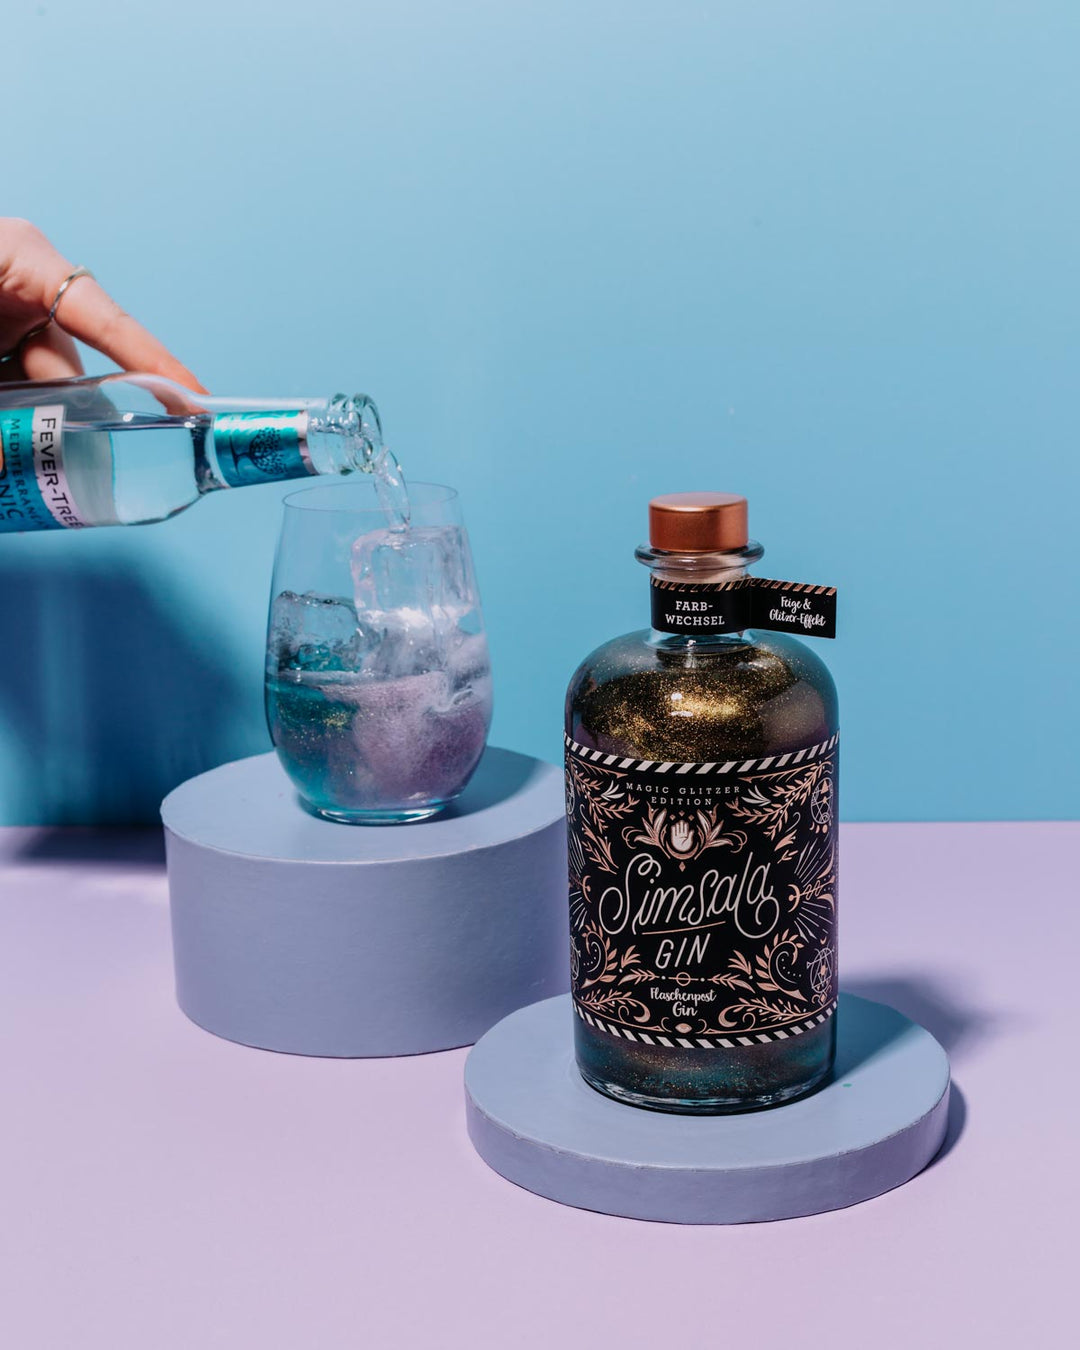 Unser Simsala Gin zeigt seinen magischen Farbwechsel, wenn er mit Tonic Water gemischt wird, was die Farbe des glitzernden Gins von blau zu lila verändert.